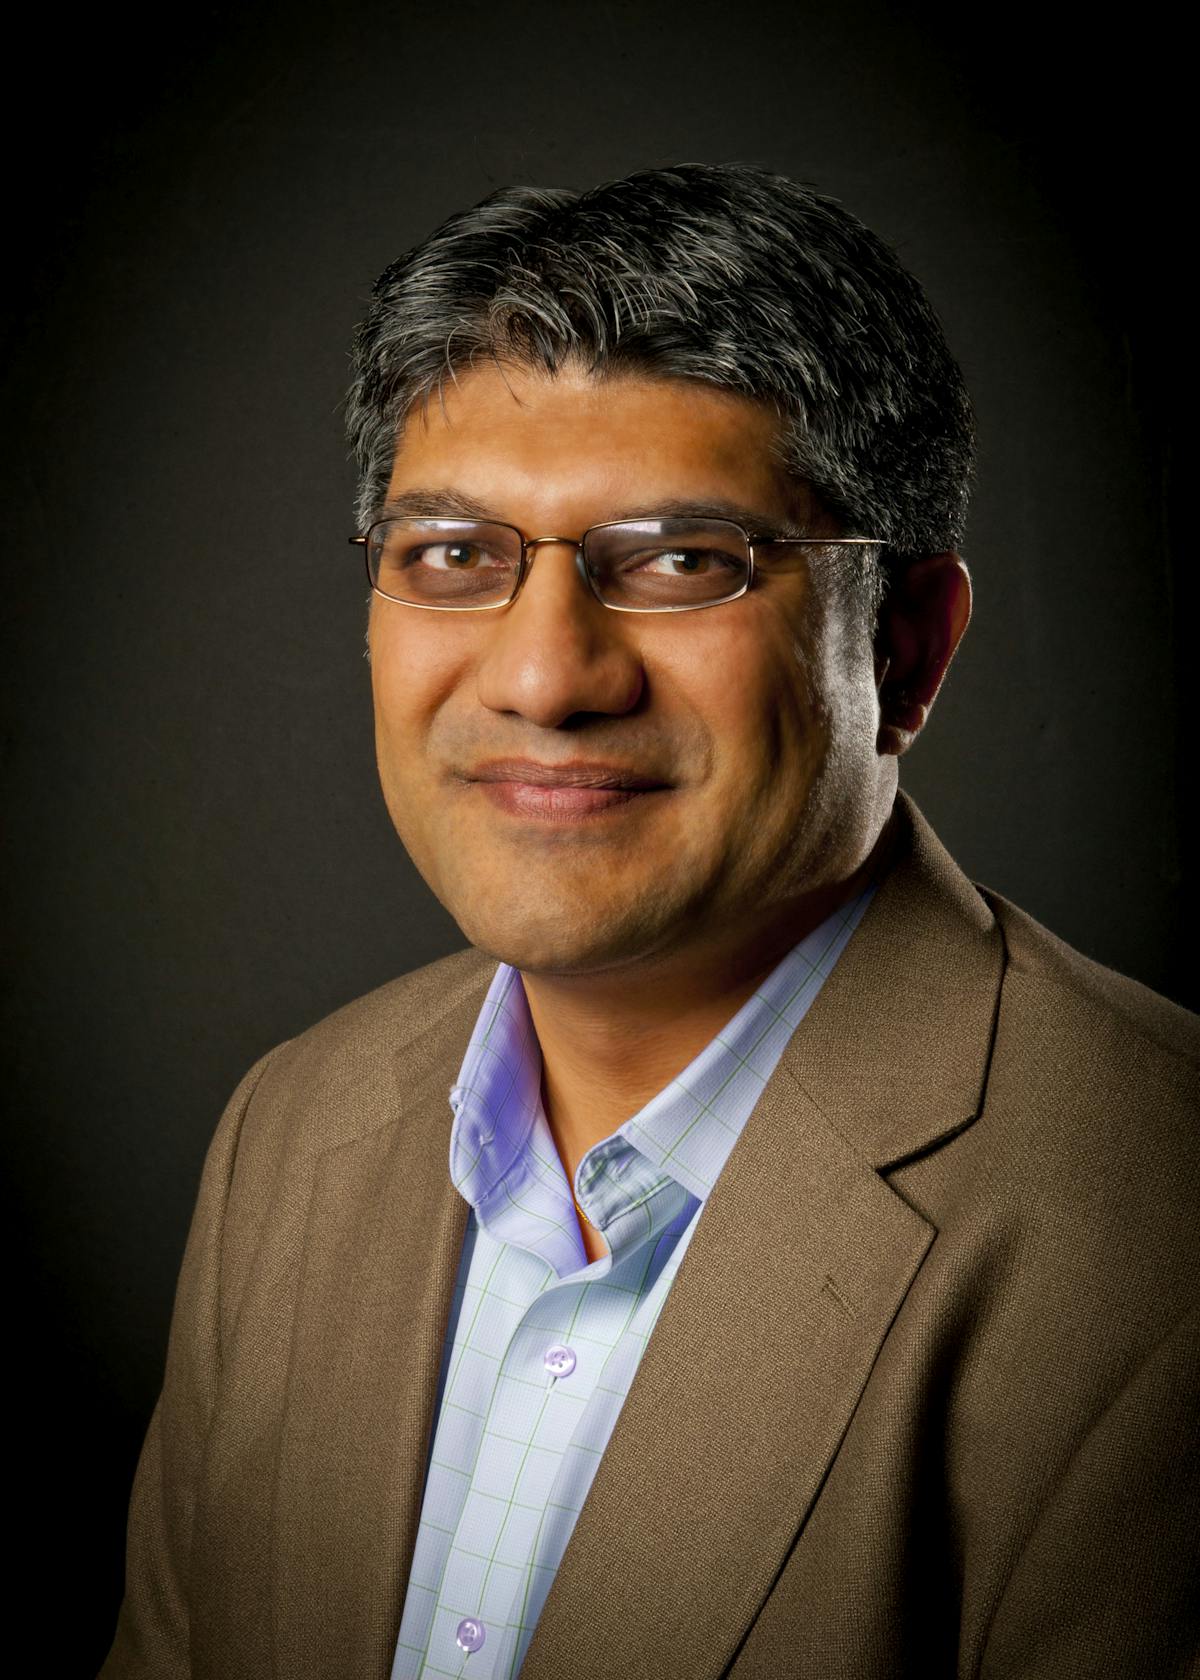 JIgar Shah, CEO of Generate Capital